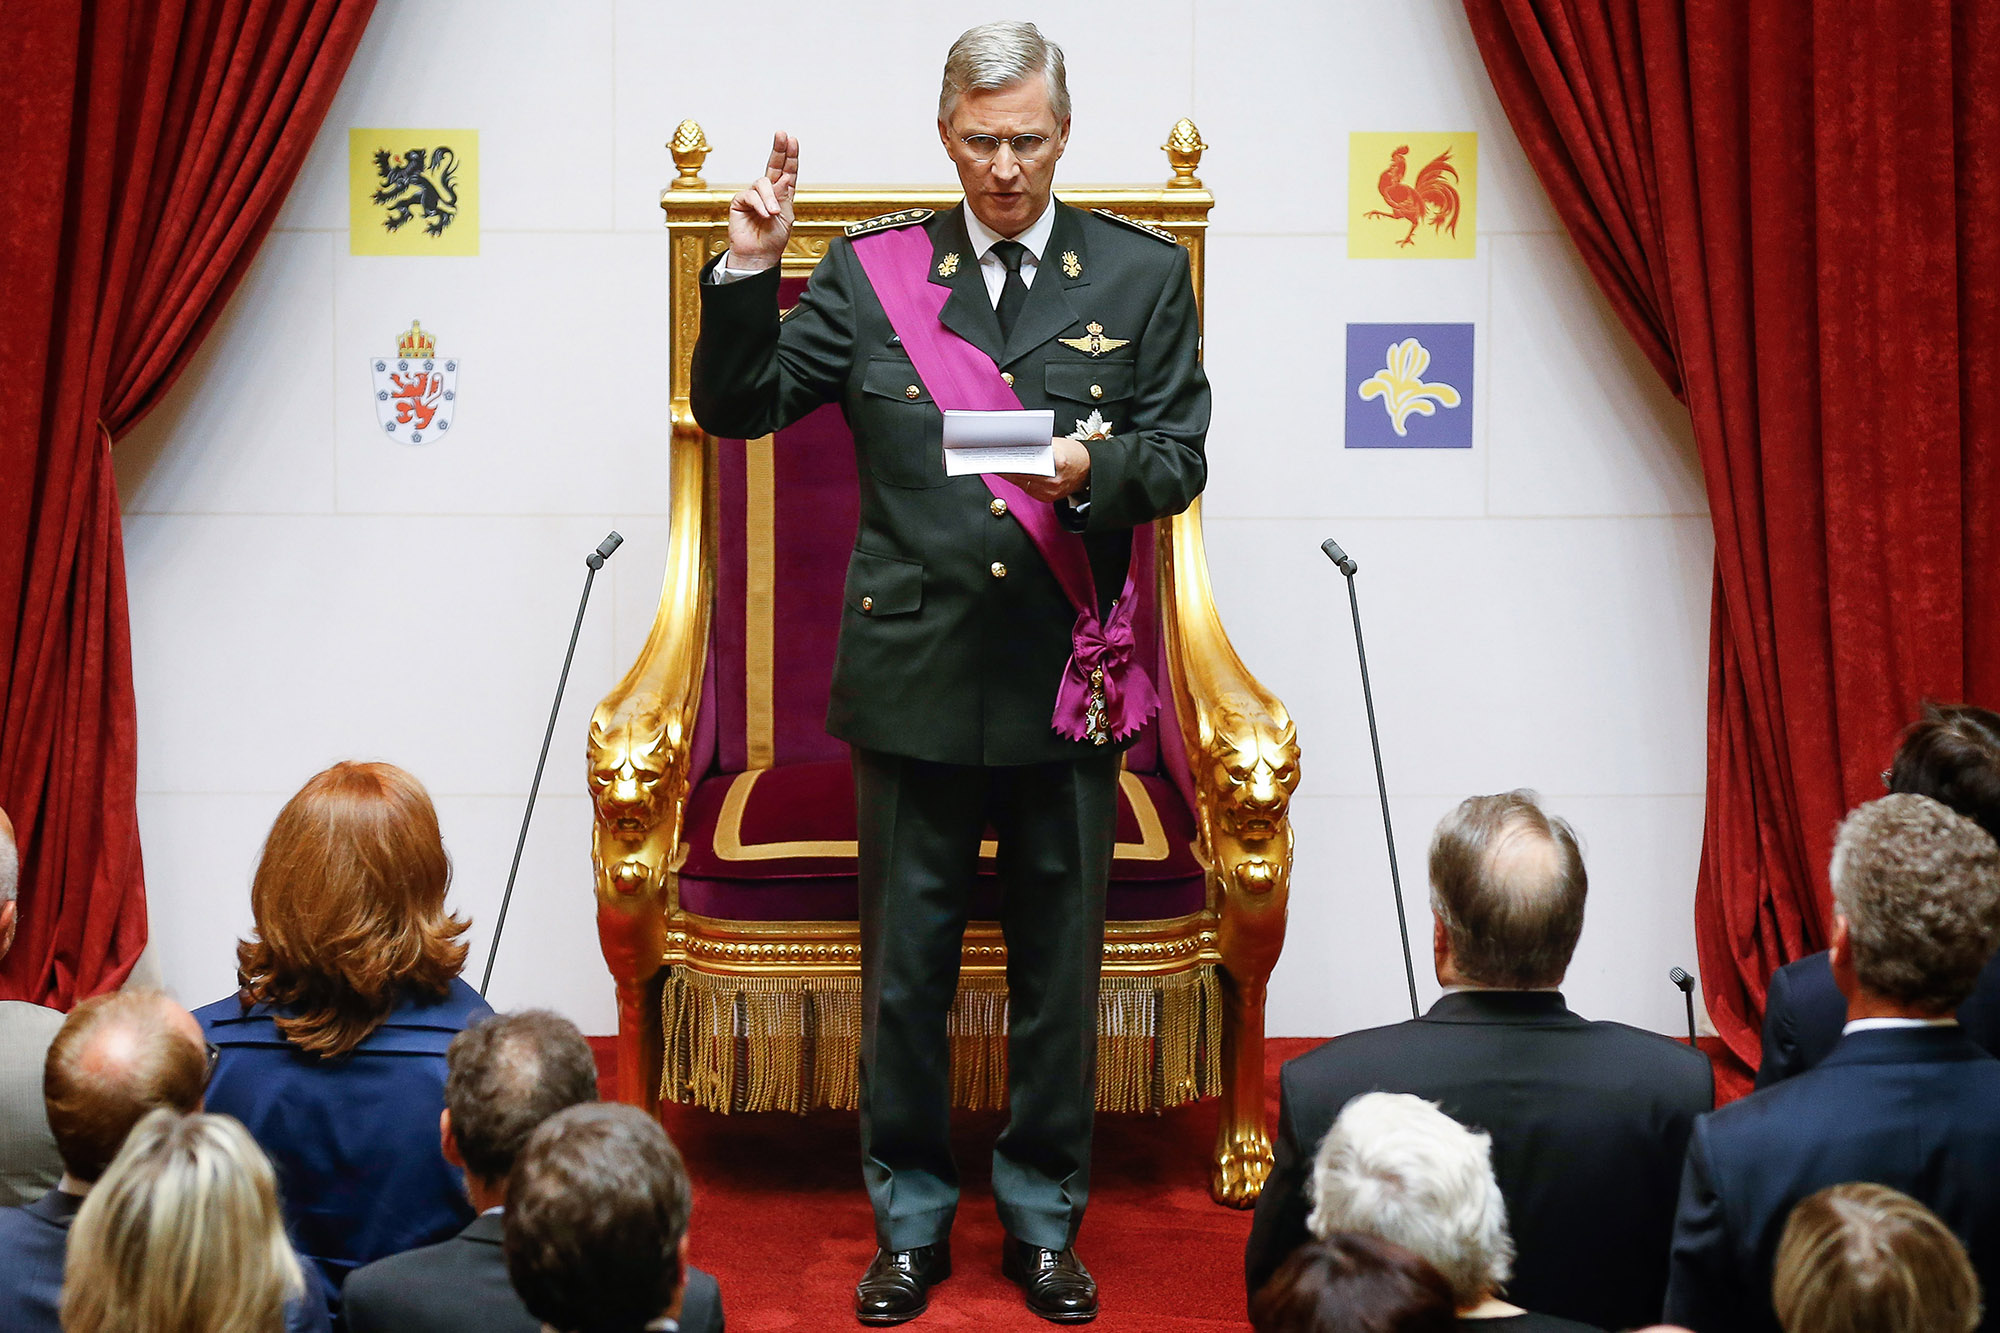 Kronprinz Philippe von Belgien wird zum neuen König der Belgier - bei der Vereidigung im Plenarsaal des Föderalparlaments in Brüssel am 21. Juli 2013 (Archivbild: Bruno Fahy/Belga)